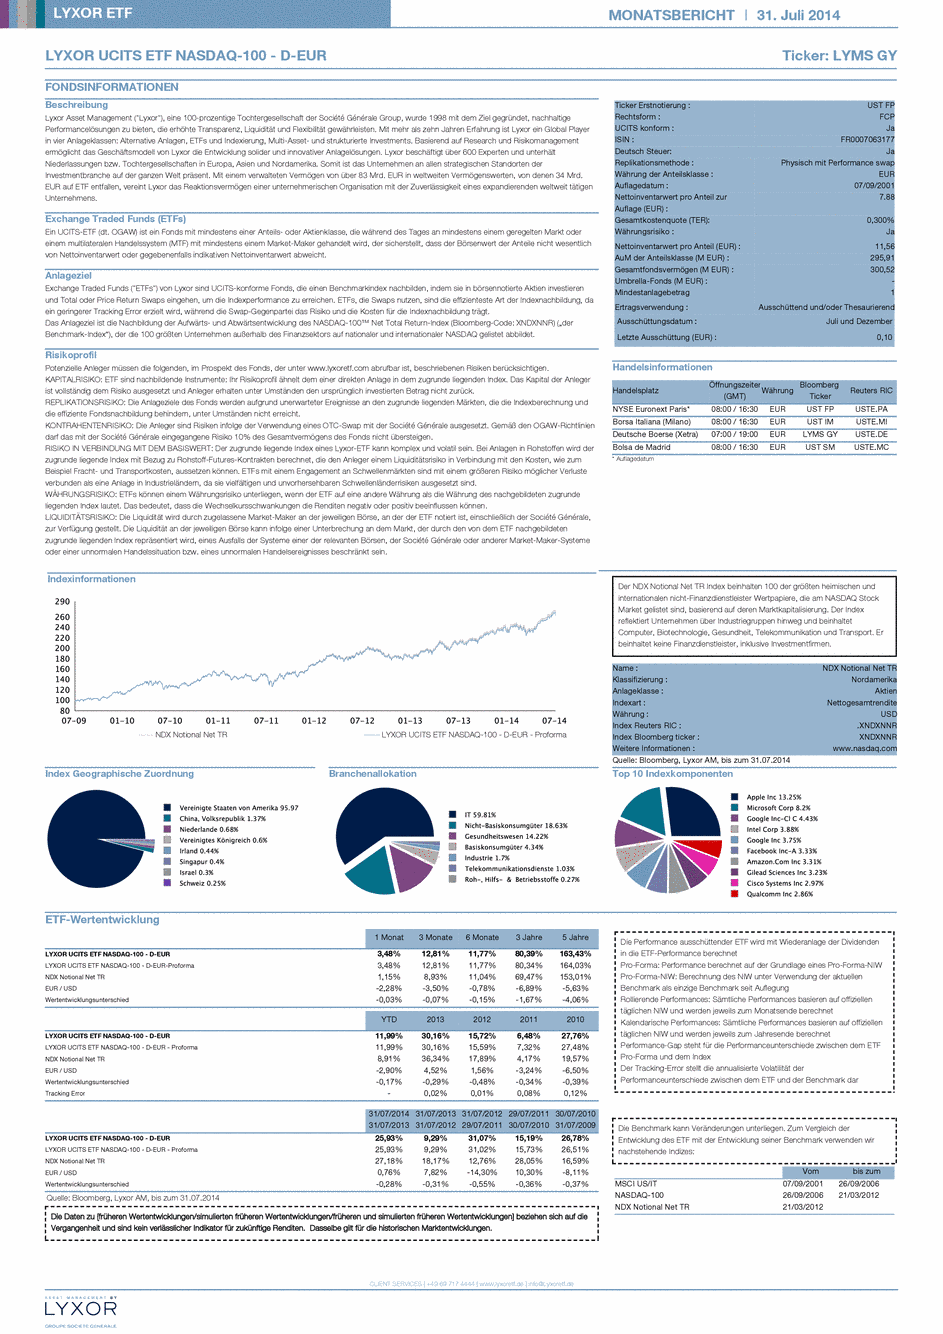 Reporting LYXOR NASDAQ-100 UCITS ETF - D-EUR - 31/07/2014 - Allemand